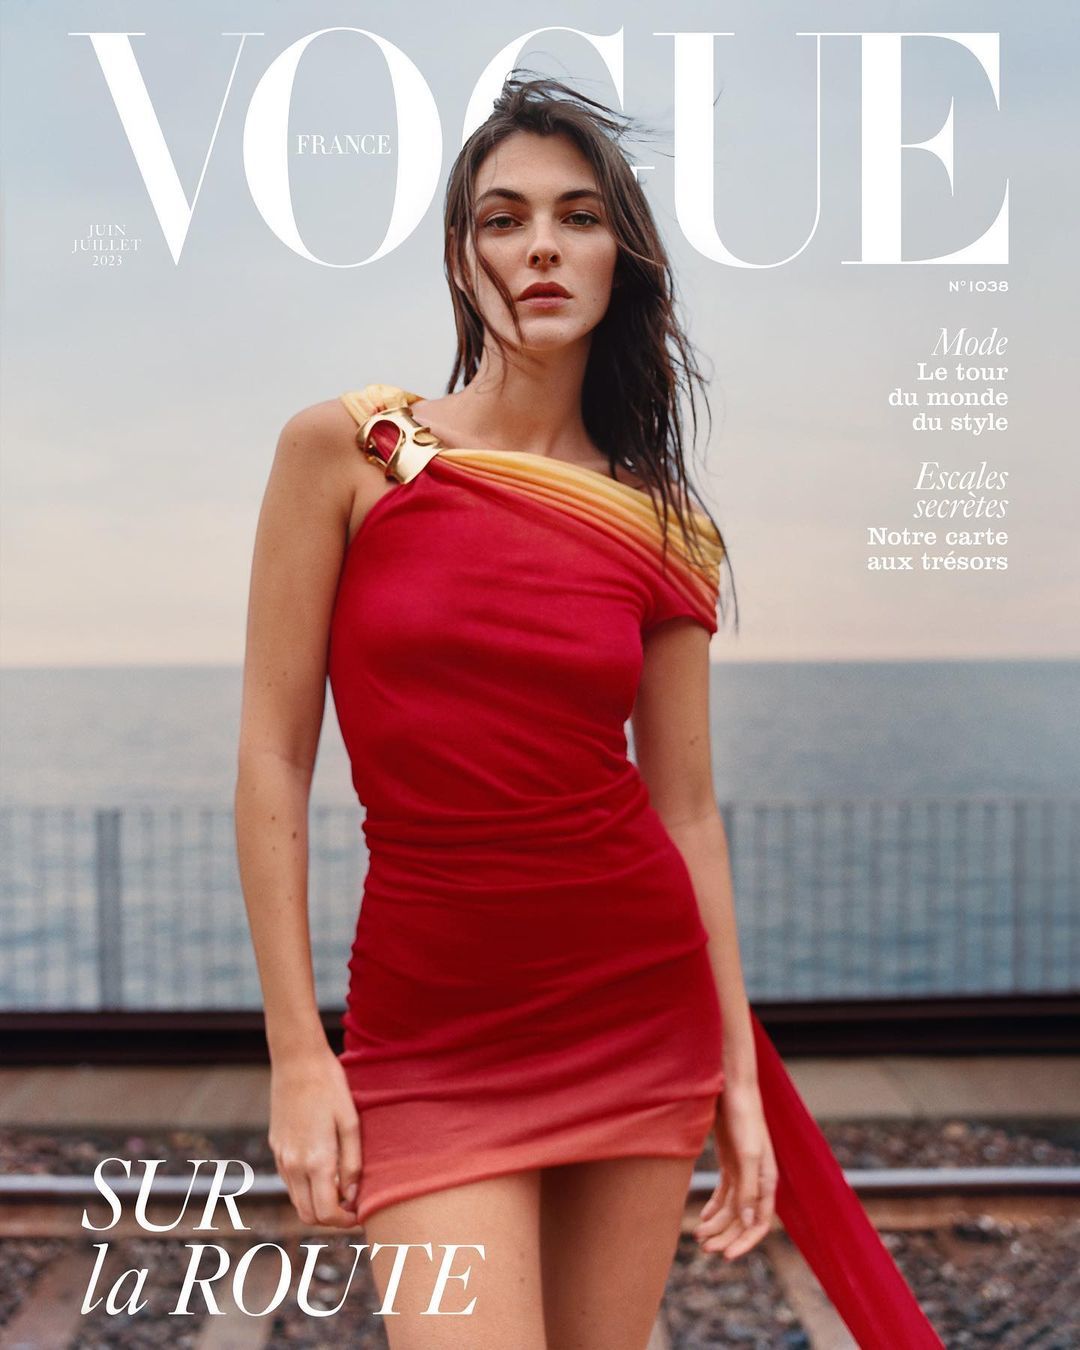 Vittoria Ceretti xuất hiện trên trang bìa Vogue. Cô không nổi tiếng toàn cầu như Bella Hadid, Kendall Jenner nhưng được nhiều thương hiệu lớn quan tâm. Ảnh: Vogue